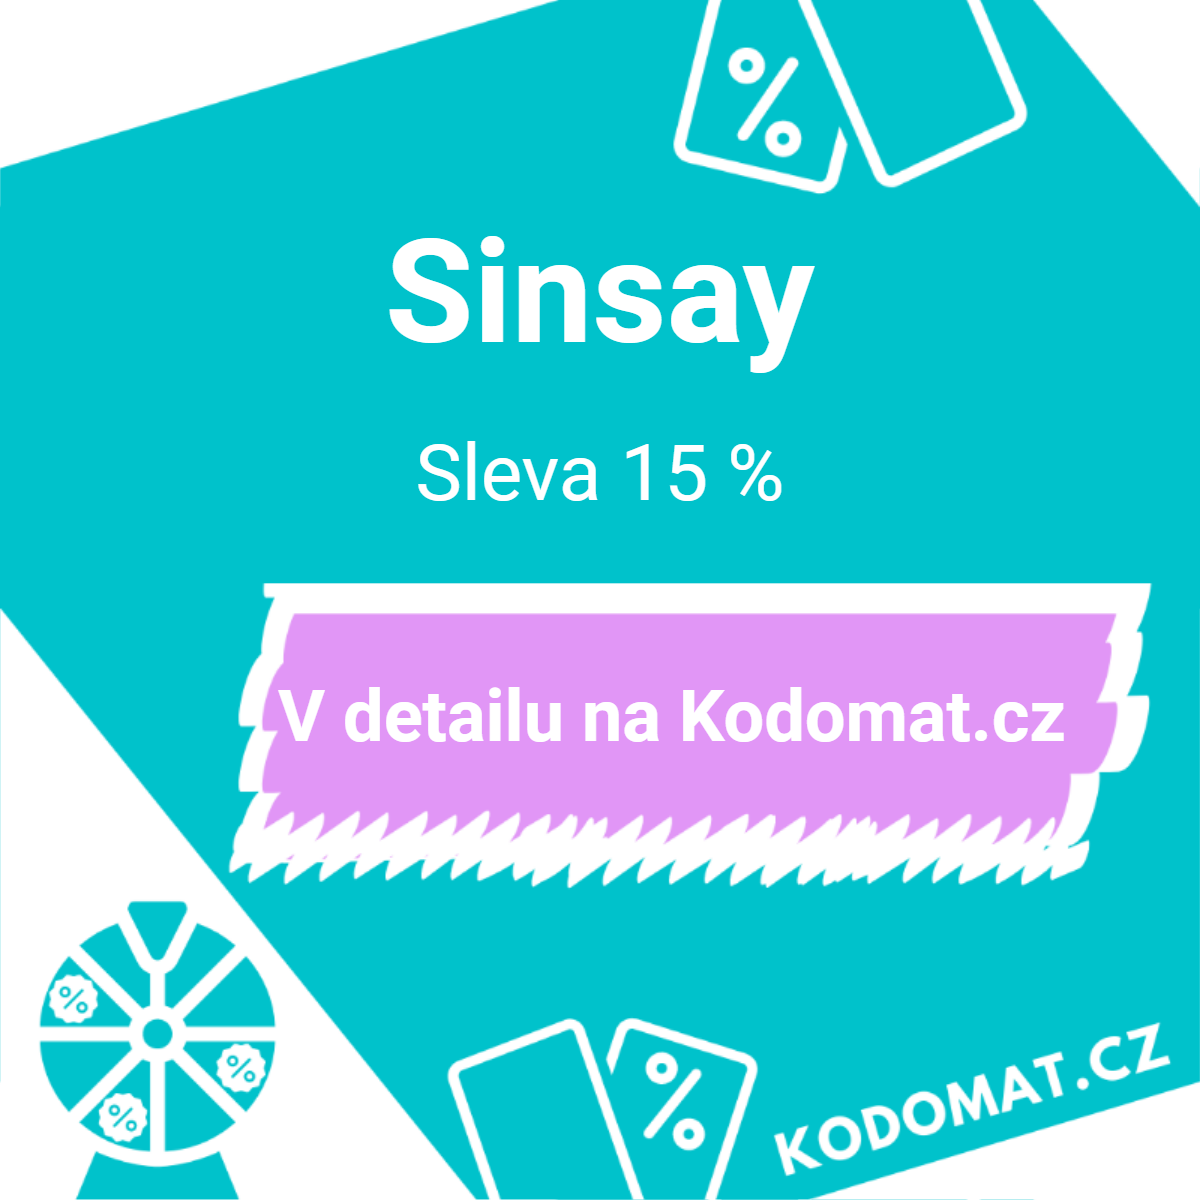 Sinsay slevový kód: Sleva 15 % (časově omezená sleva)